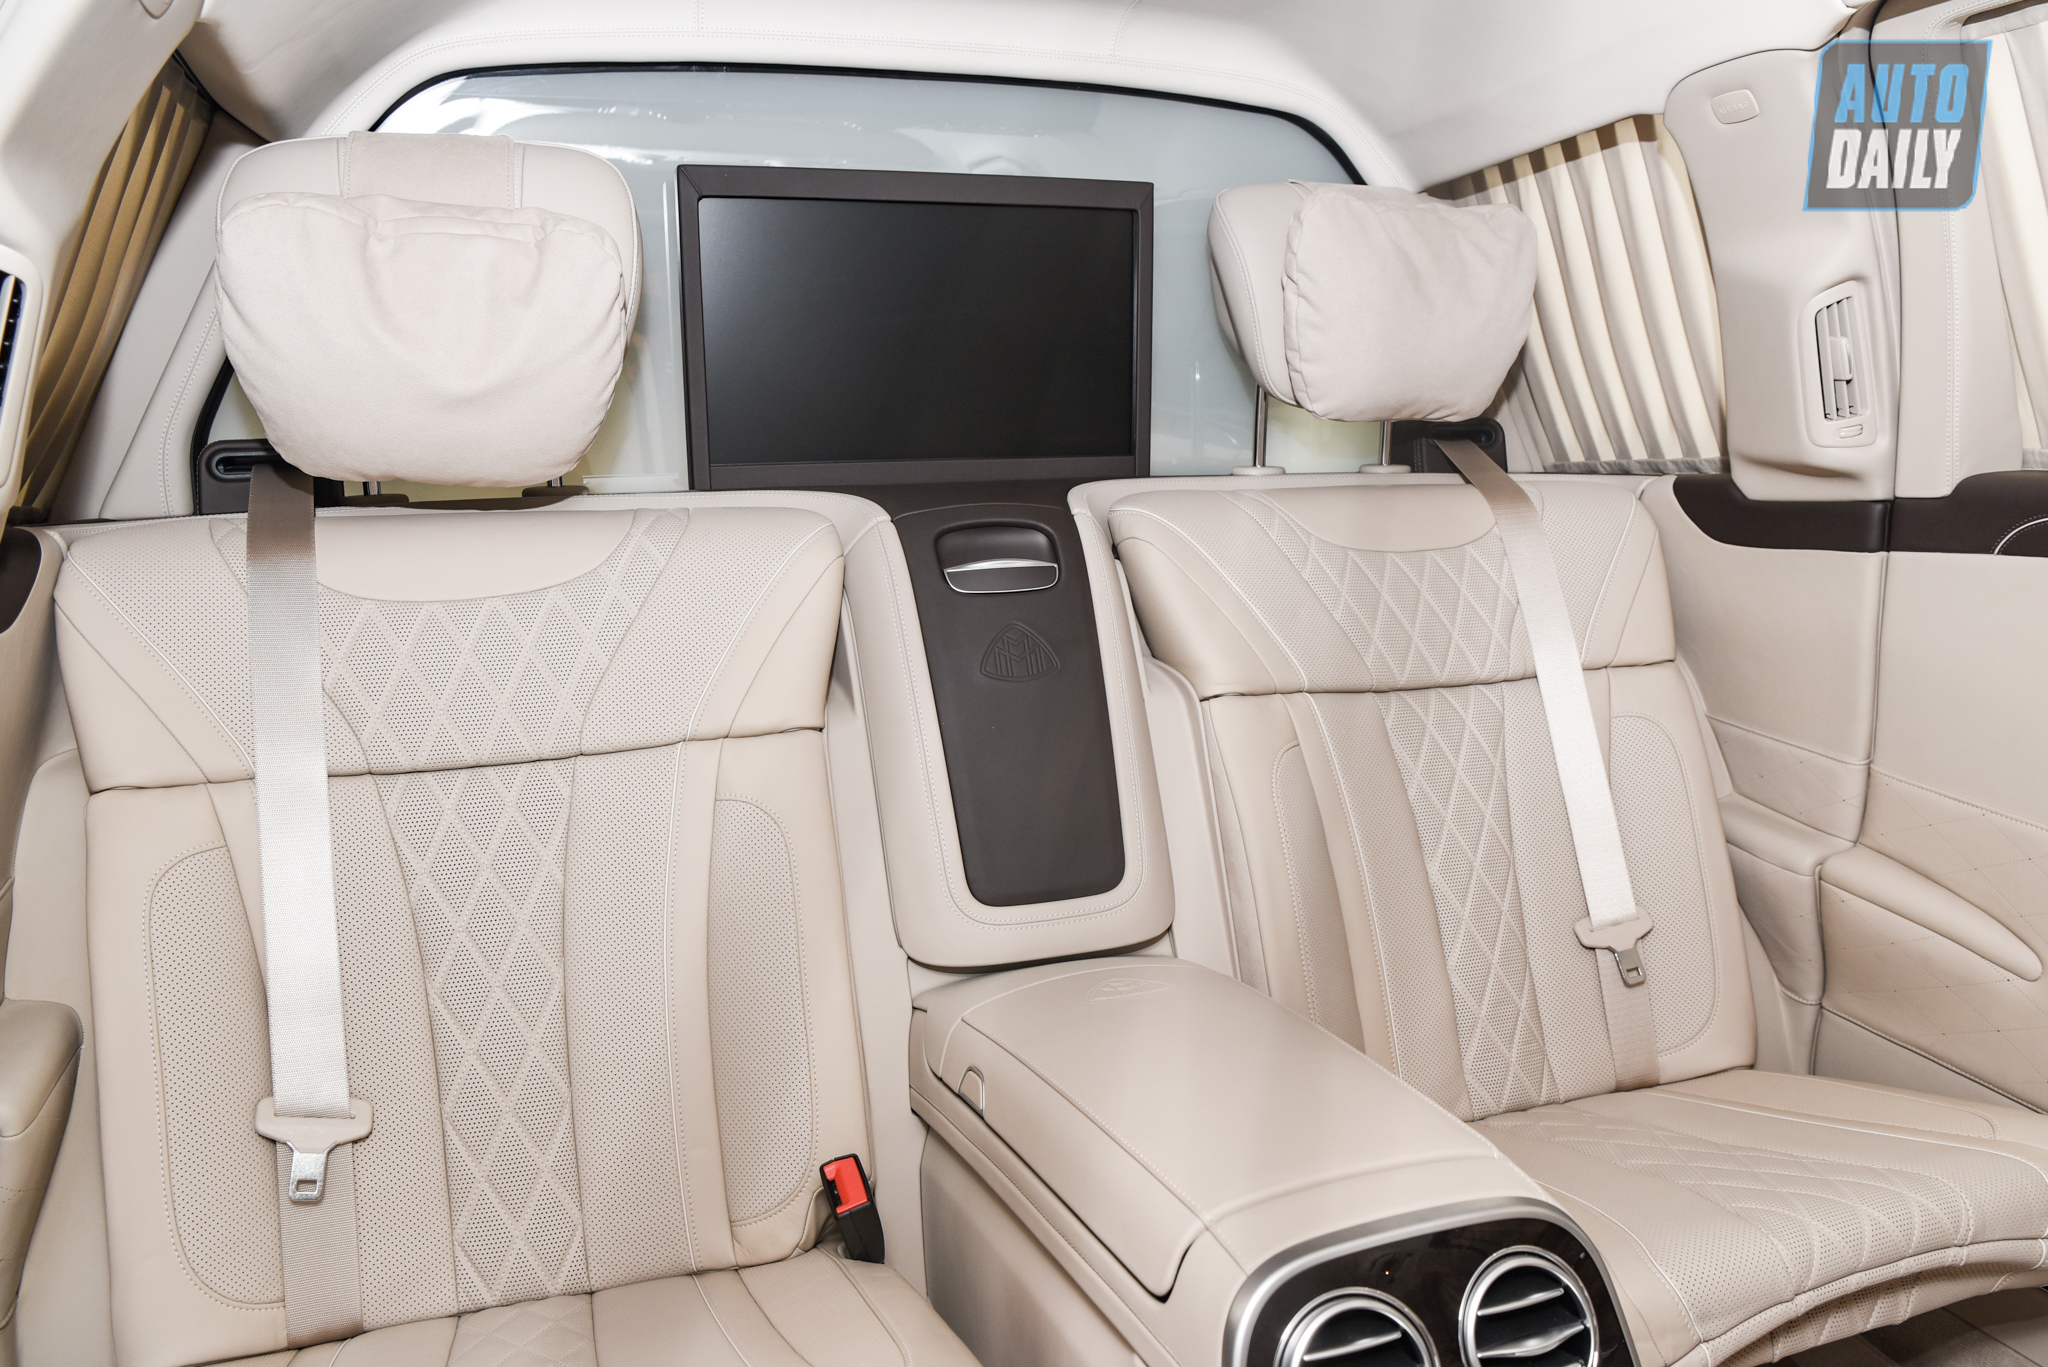 Limousine siêu sang cho 'Chủ tịch' Mercedes-Maybach S650 Pullman đẳng cấp cỡ nào? dsc-0961.jpg